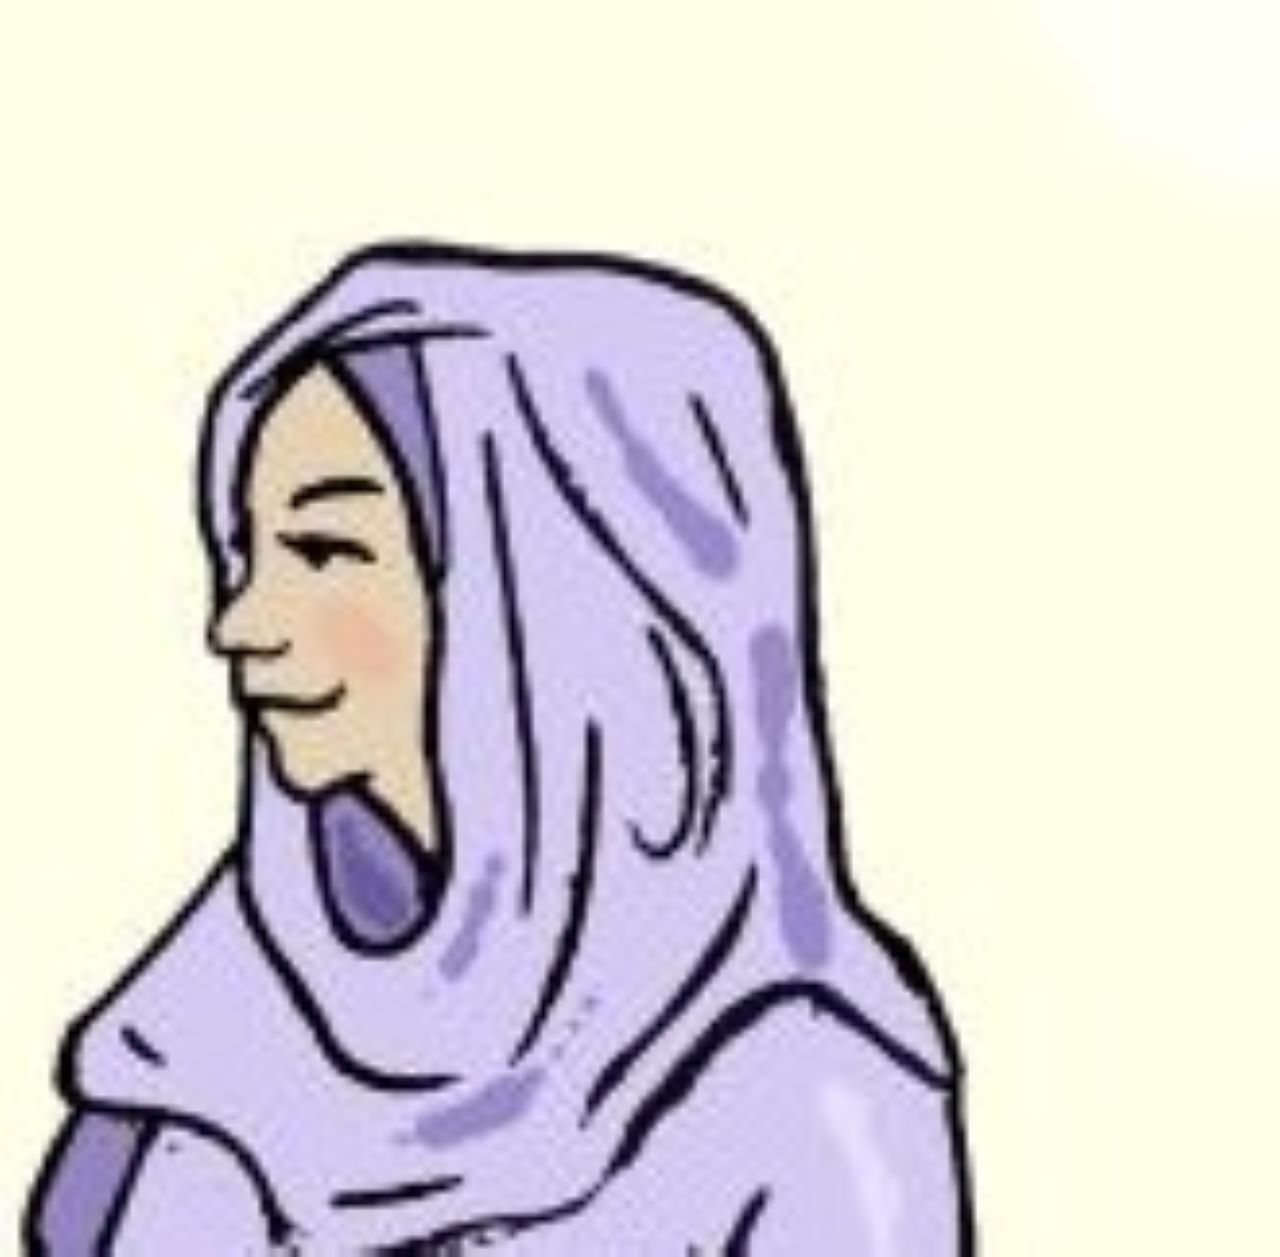 Ilustracijom je prikazana marama za glavu.